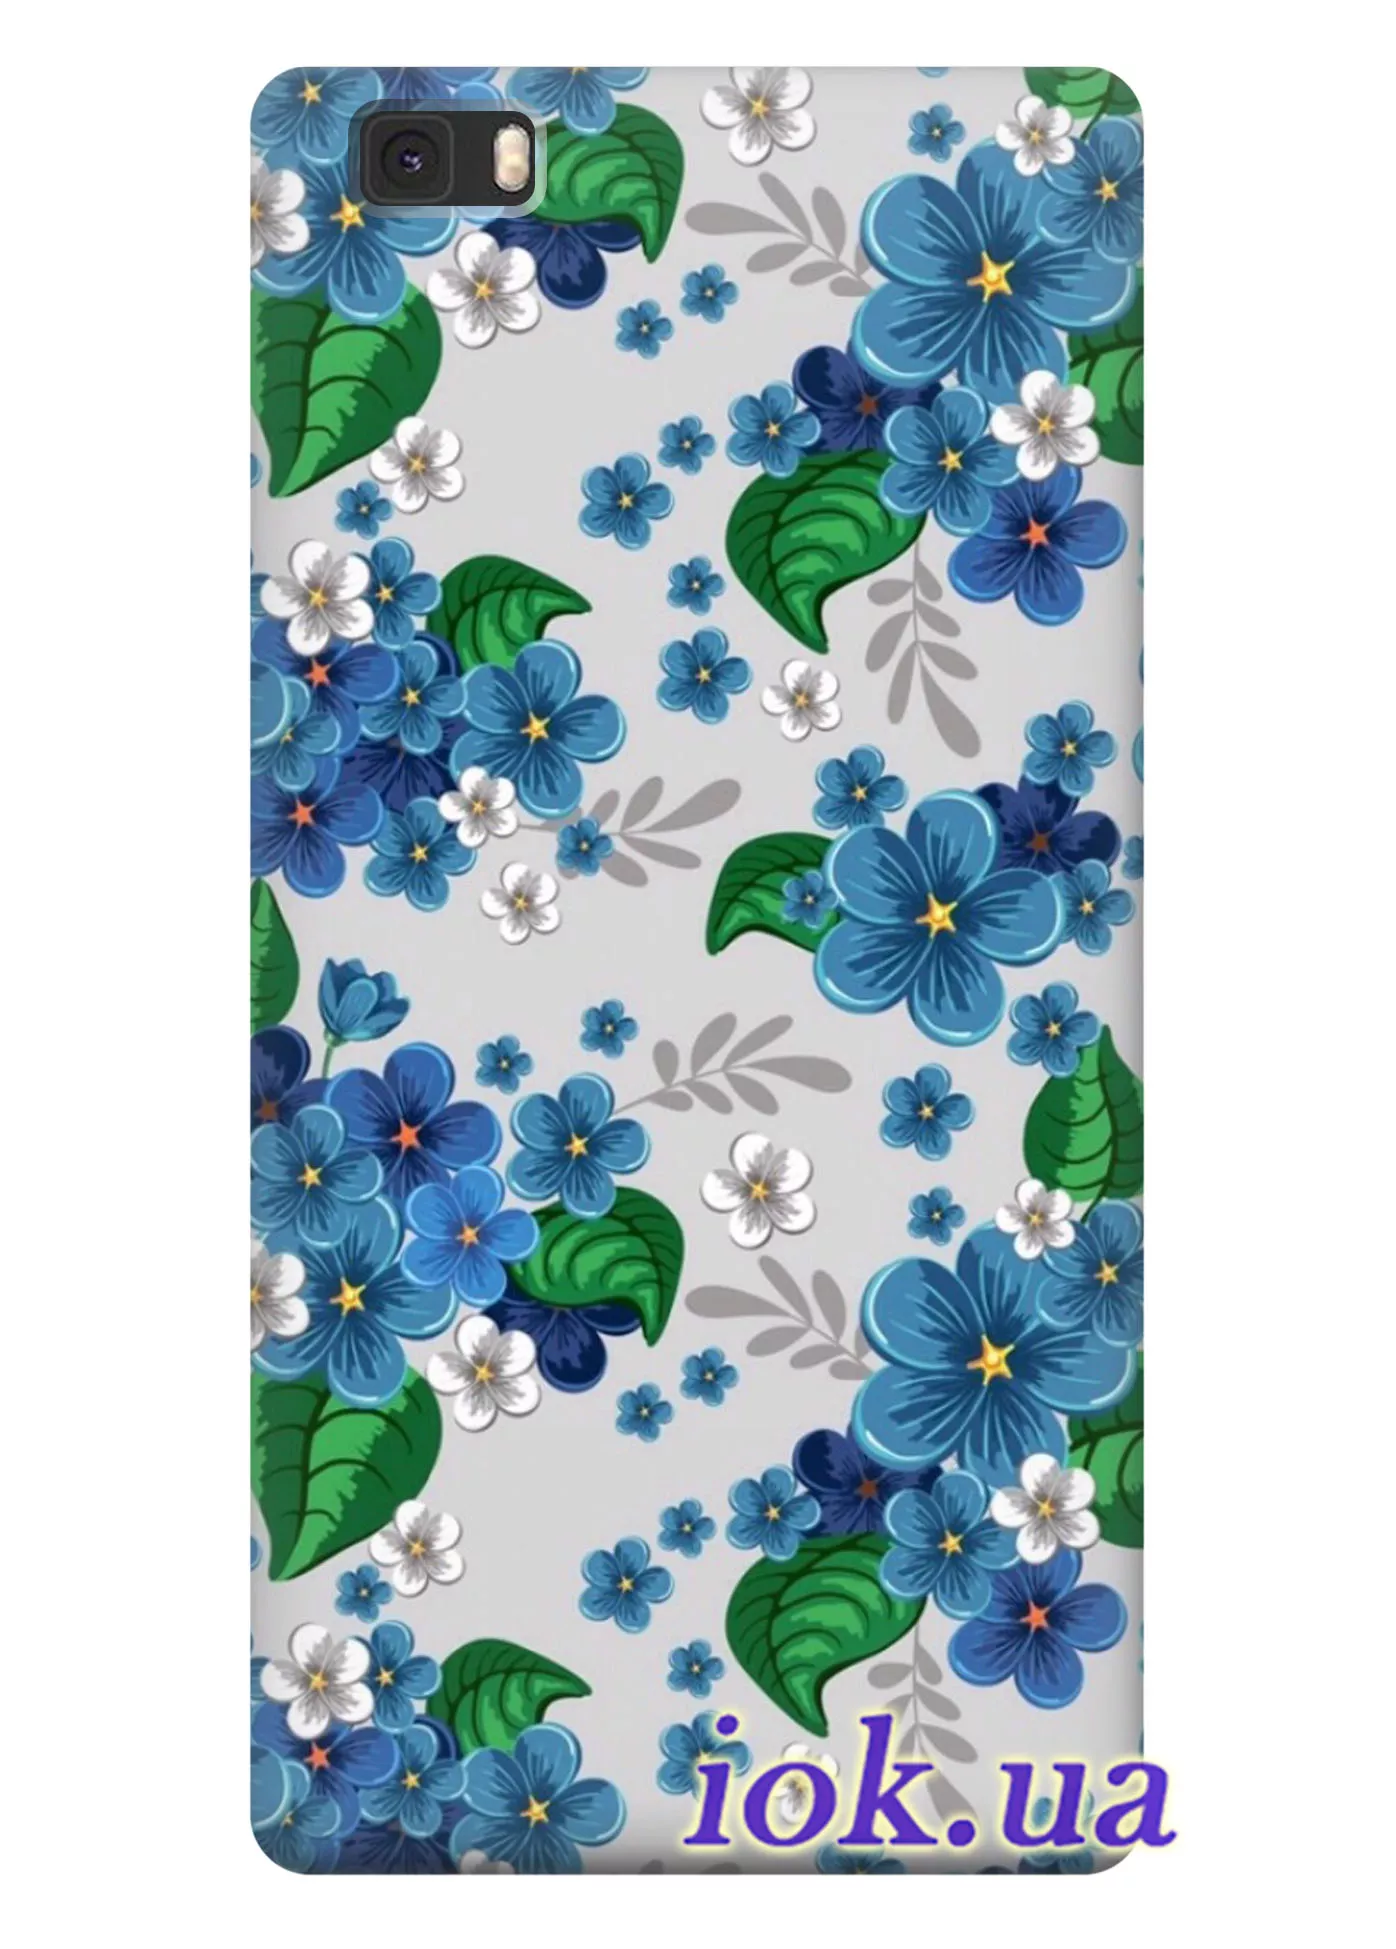 Чехол для Huawei P8 Lite - Голубые цветочки